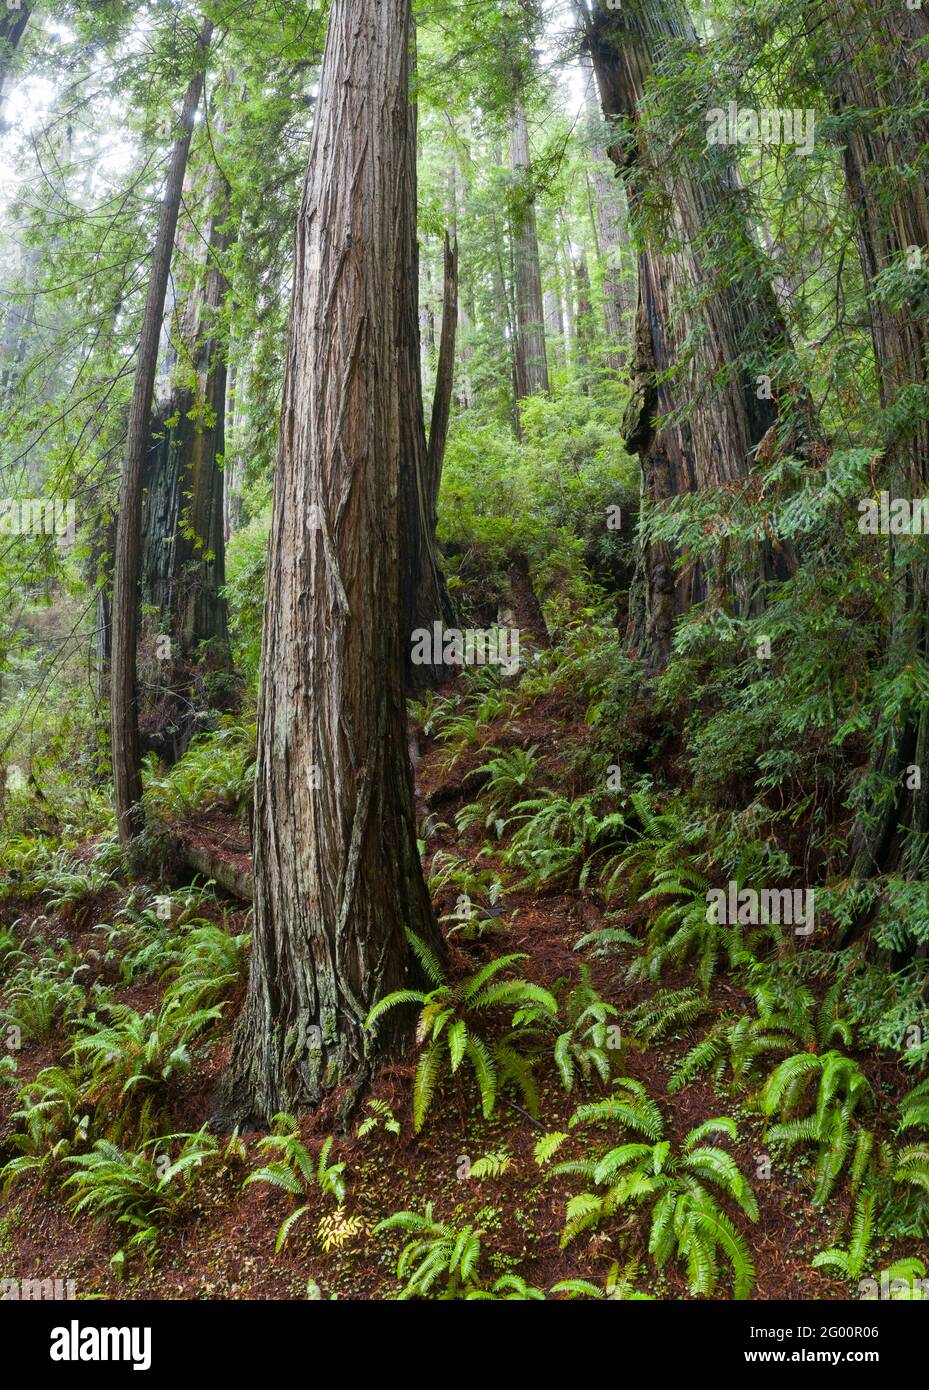 Gli alberi di sequoia e la vegetazione altra prosperano nel clima umido e costiero della California del Nord. Questa regione è sede di ampie fasce di foresta vergine. Foto Stock